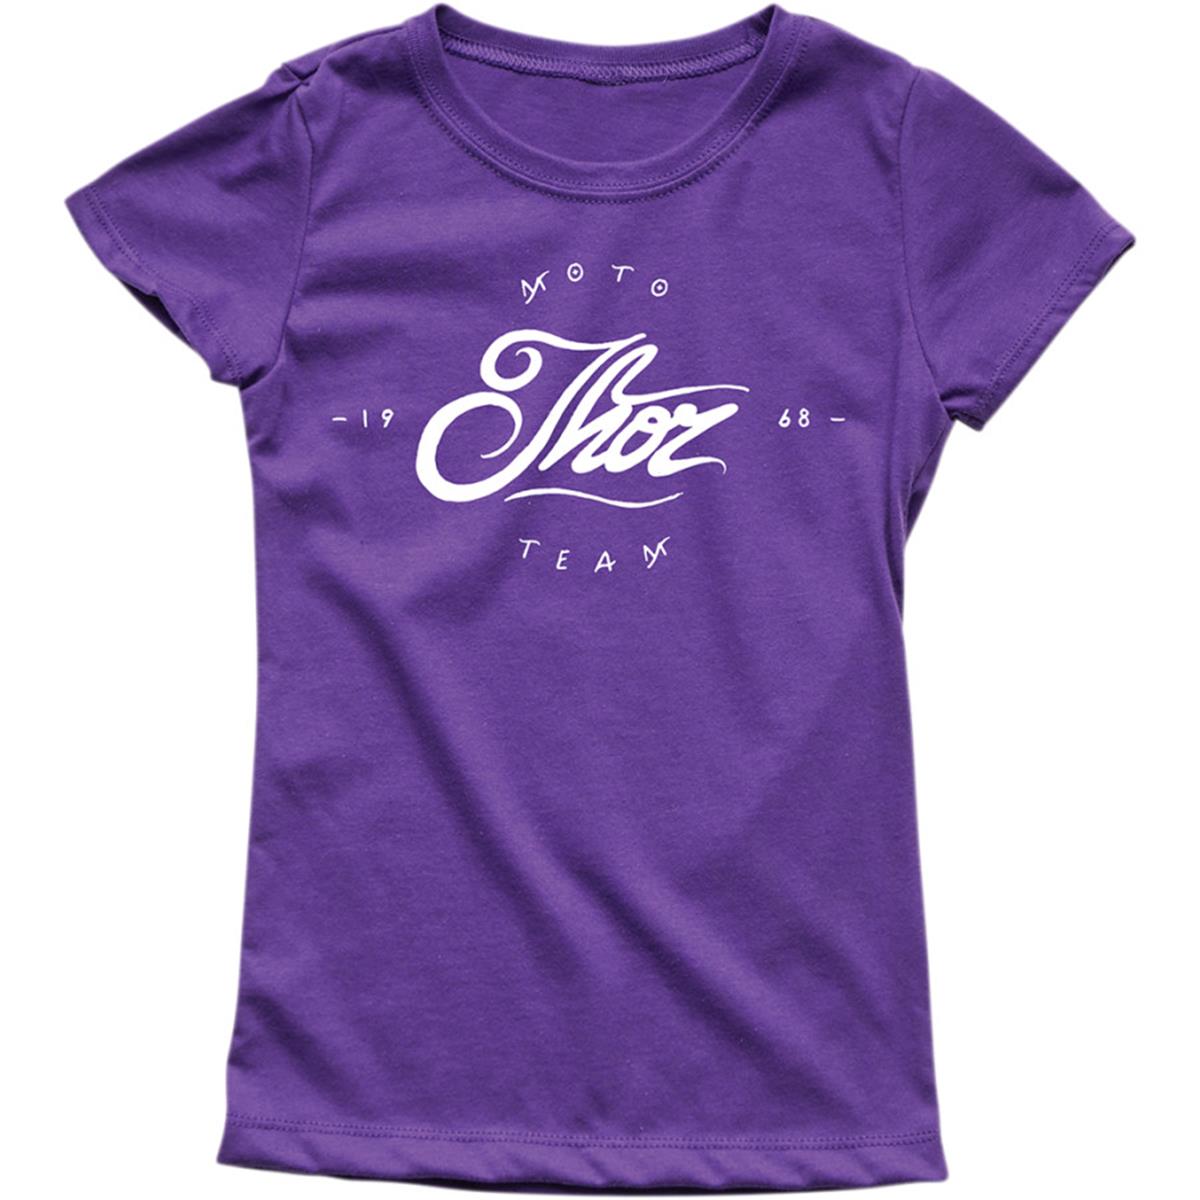 Thor Kids Girls T-Shirt Runner Purple